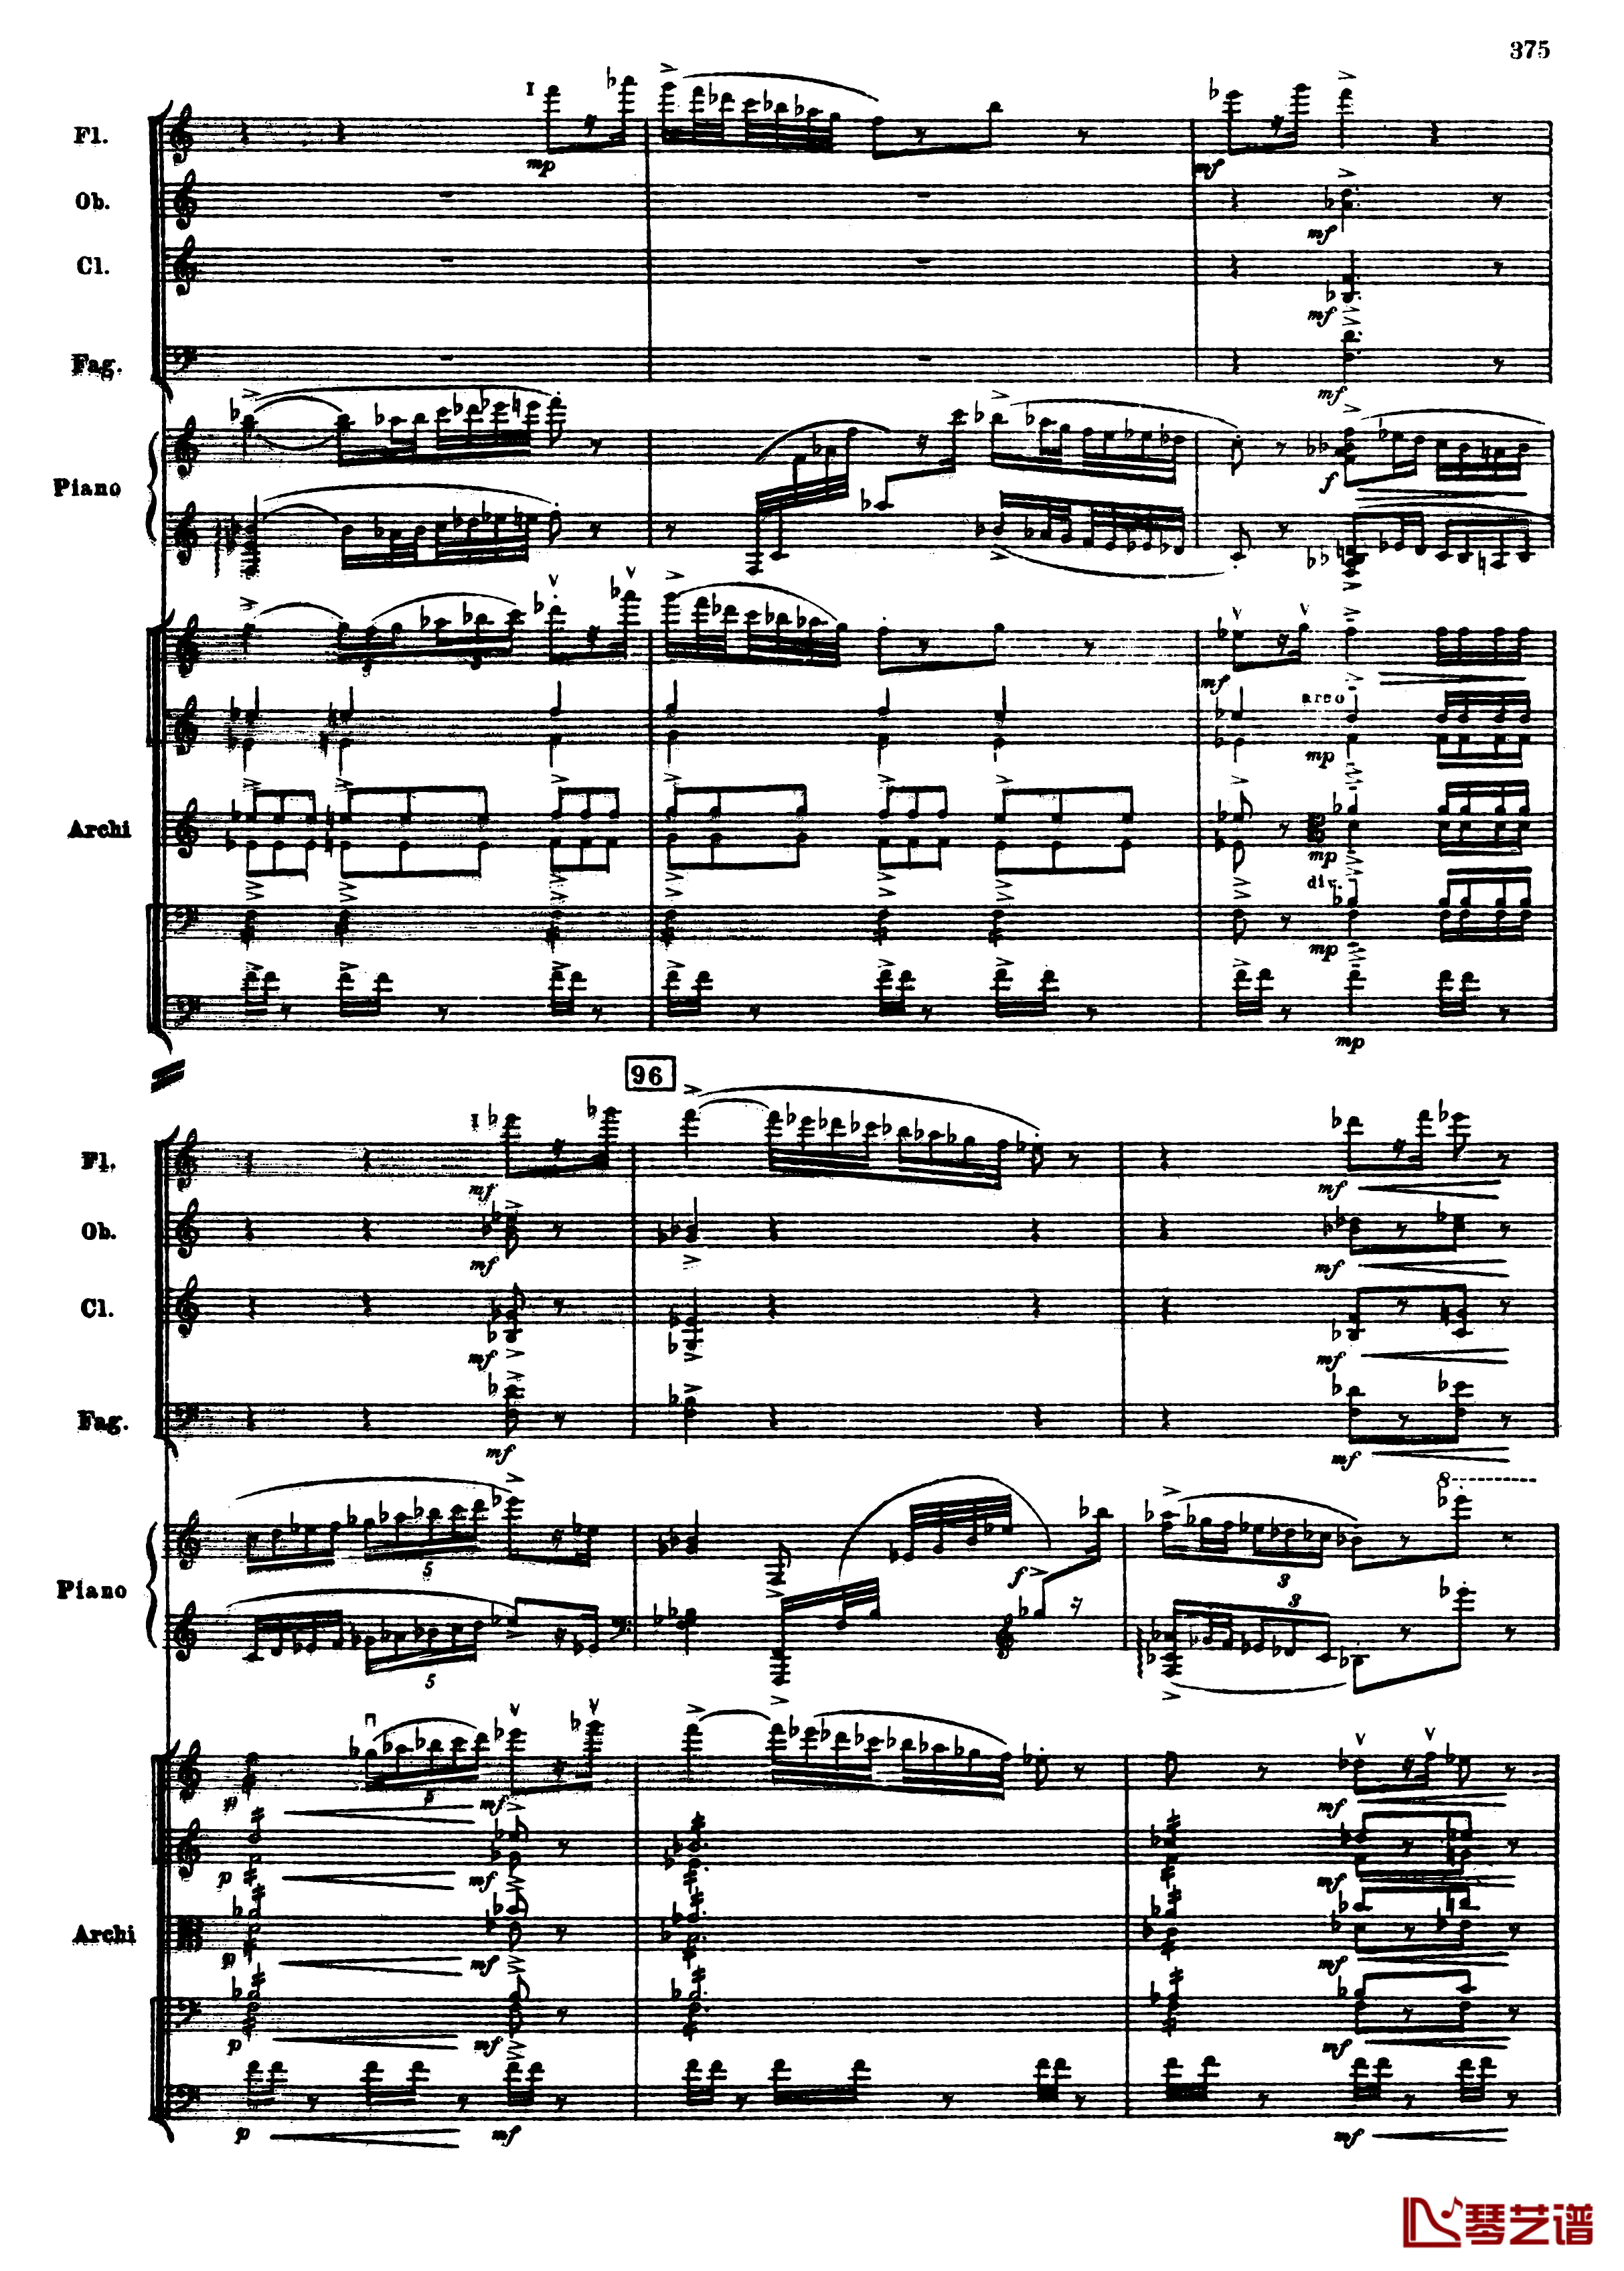 普罗科菲耶夫第三钢琴协奏曲钢琴谱-总谱-普罗科非耶夫107